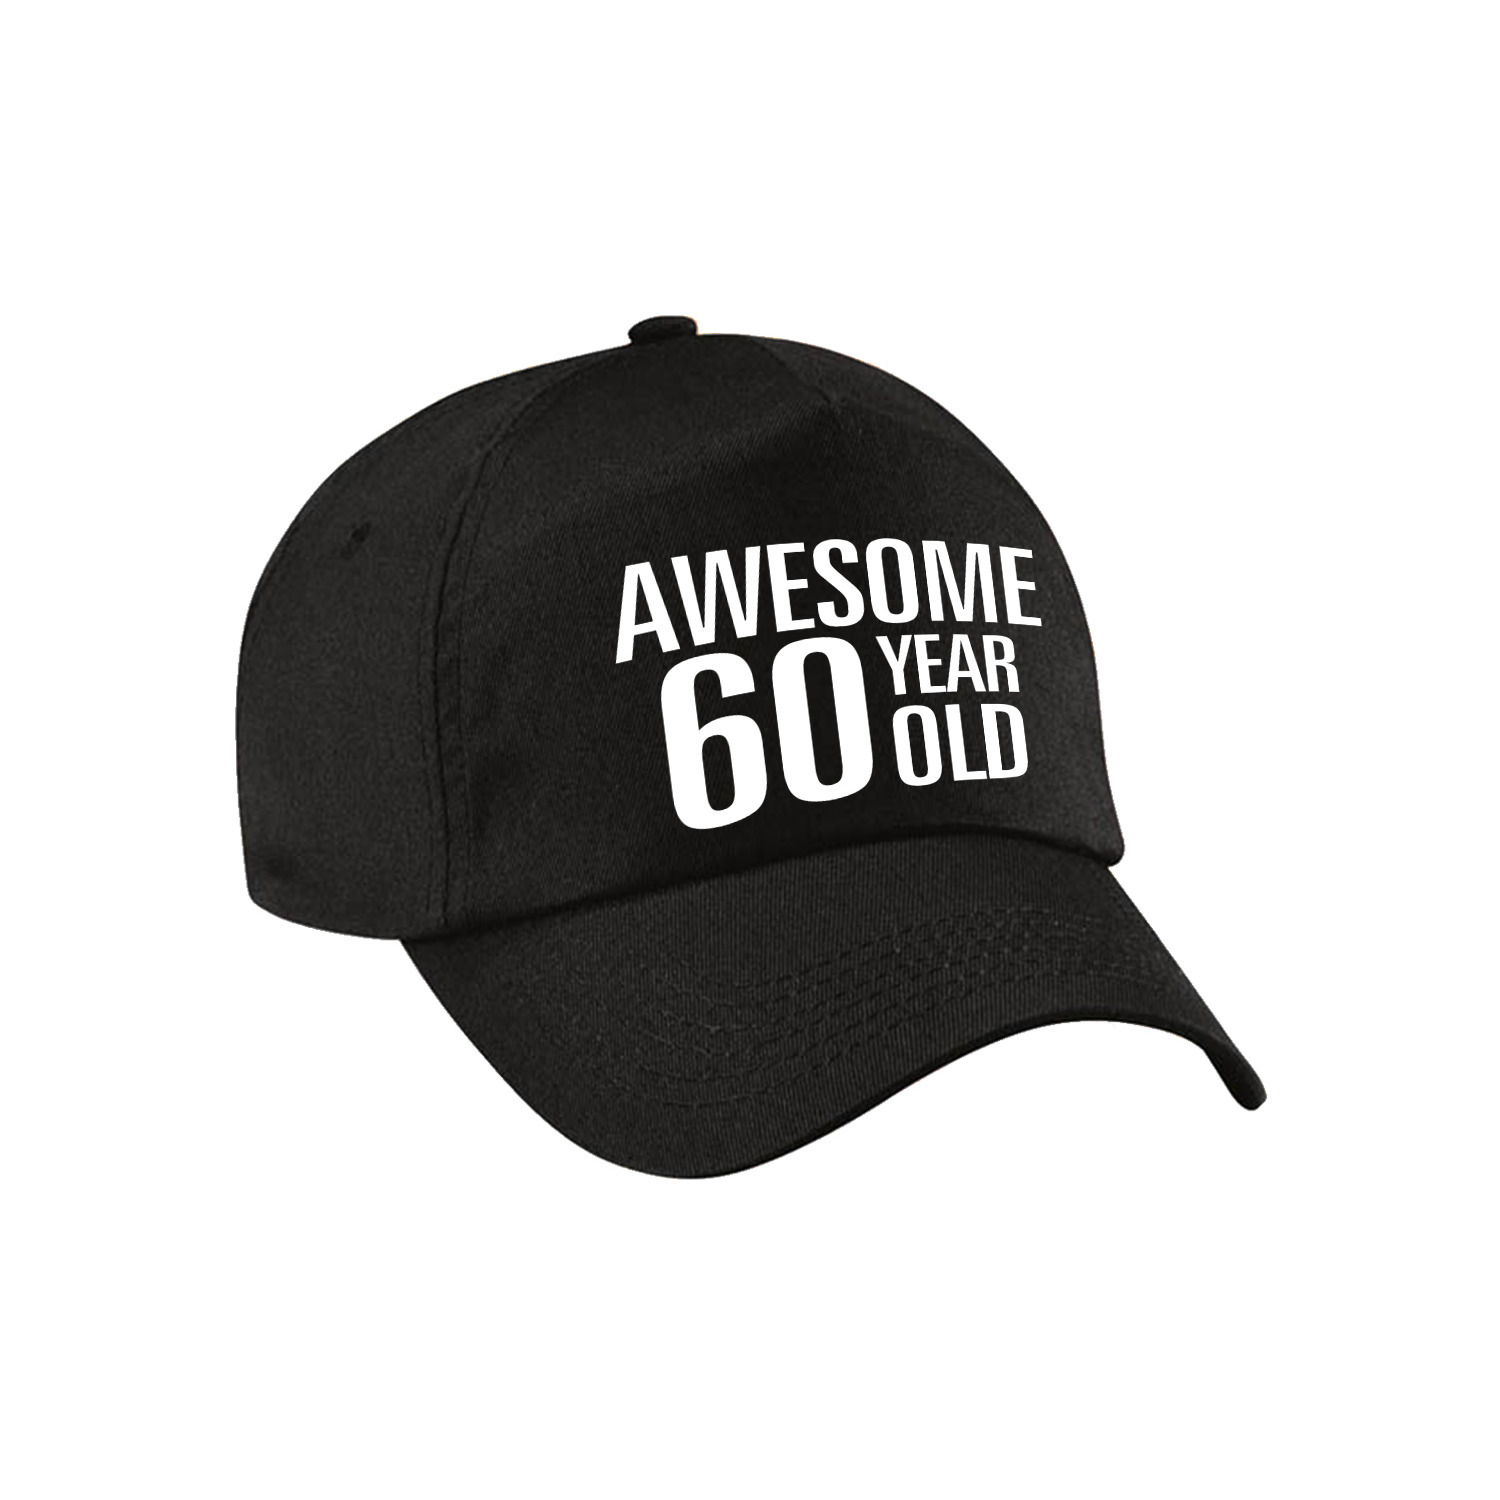 Awesome 60 year old verjaardag pet-cap zwart voor dames en heren